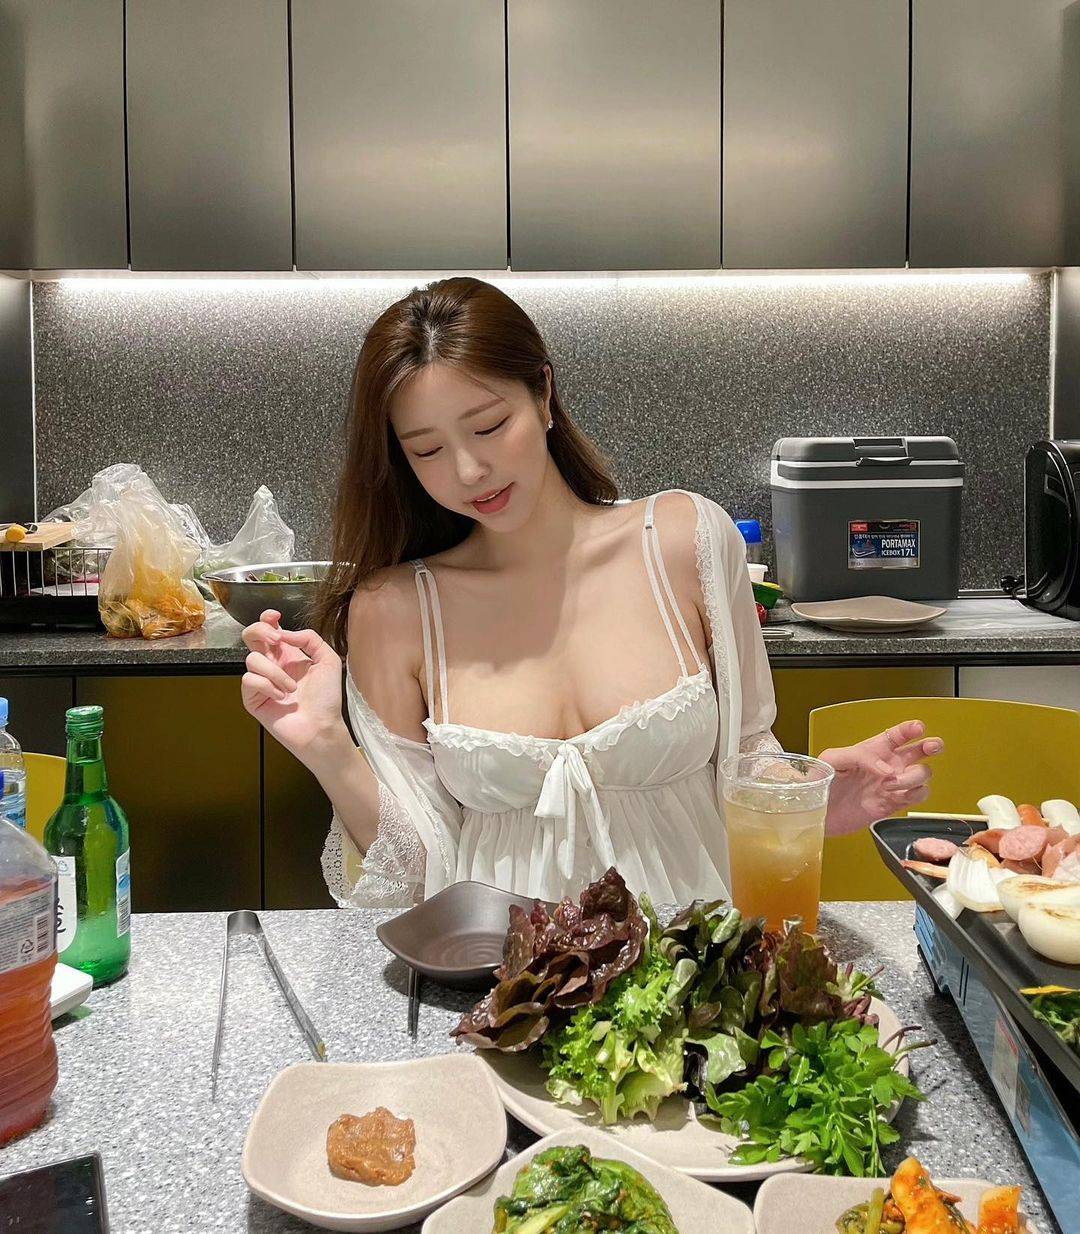 照片中的她正在吃烤肉，穿着白色睡衣大秀傲人身材。